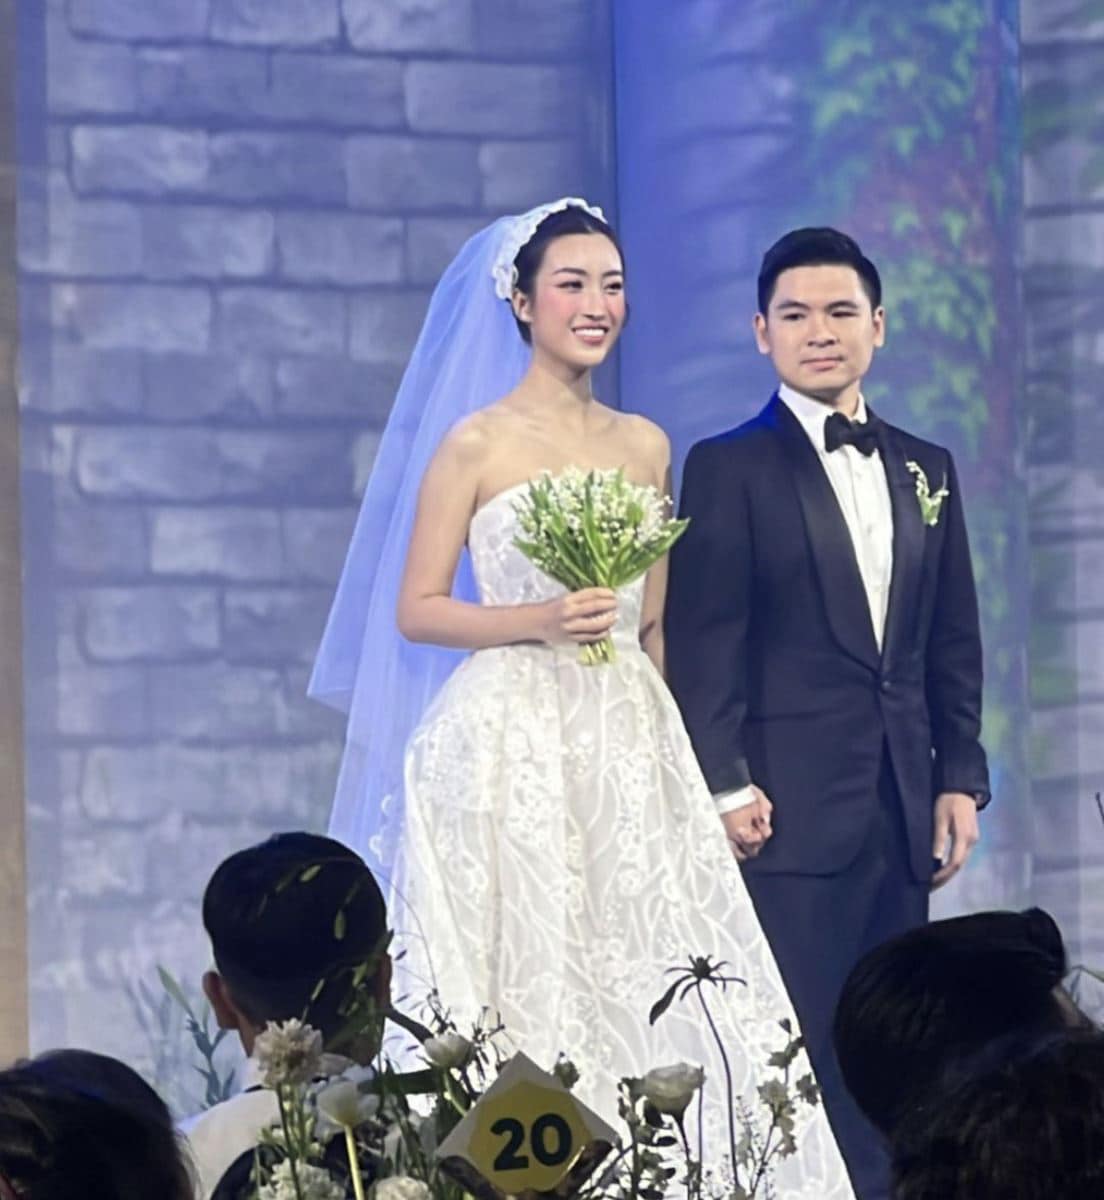 Đám cưới của hoa hậu Đỗ Mỹ Linh và con trai bầu Hiển - thiếu gia Đỗ Vinh Quang đã diễn ra vào tối ngày 23/10